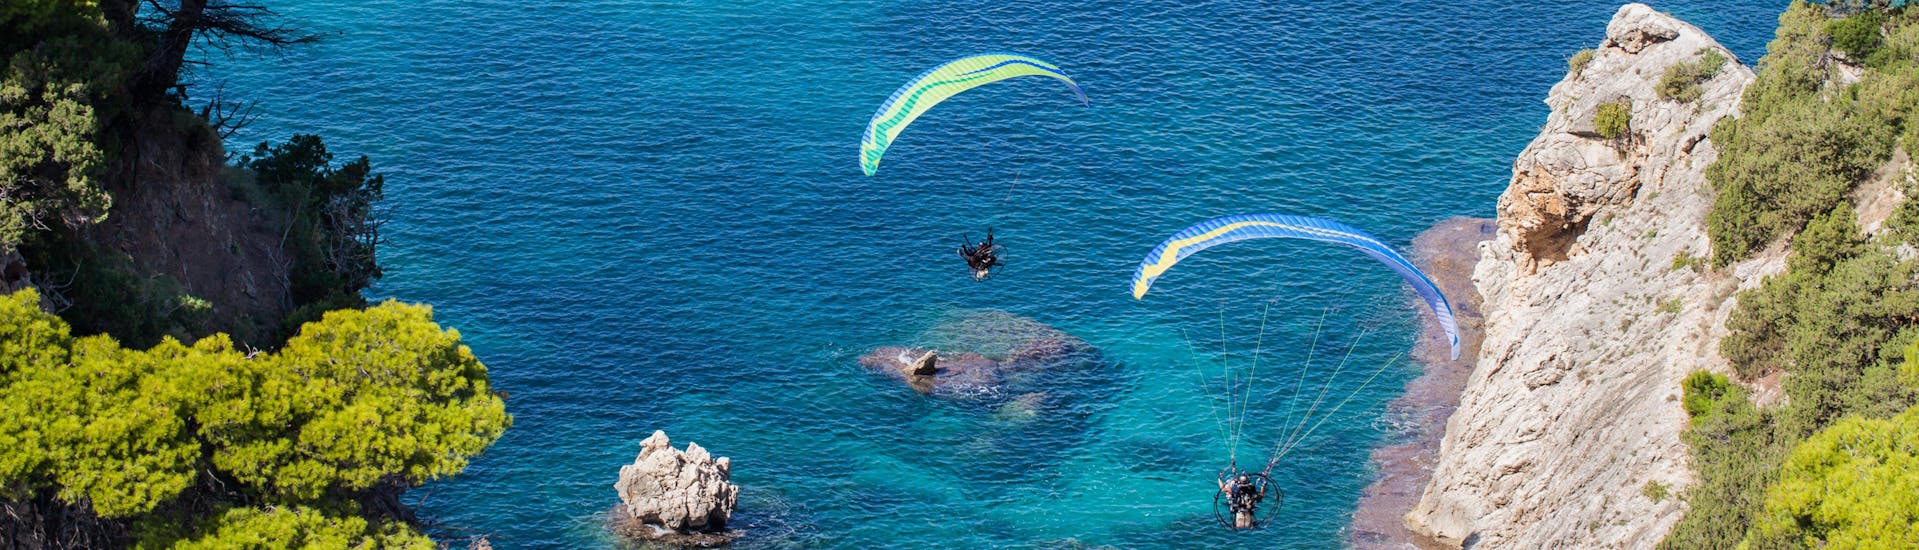 Falassarna: Een tandemvlucht vindt plaats in een van de hotspots voor paragliding.